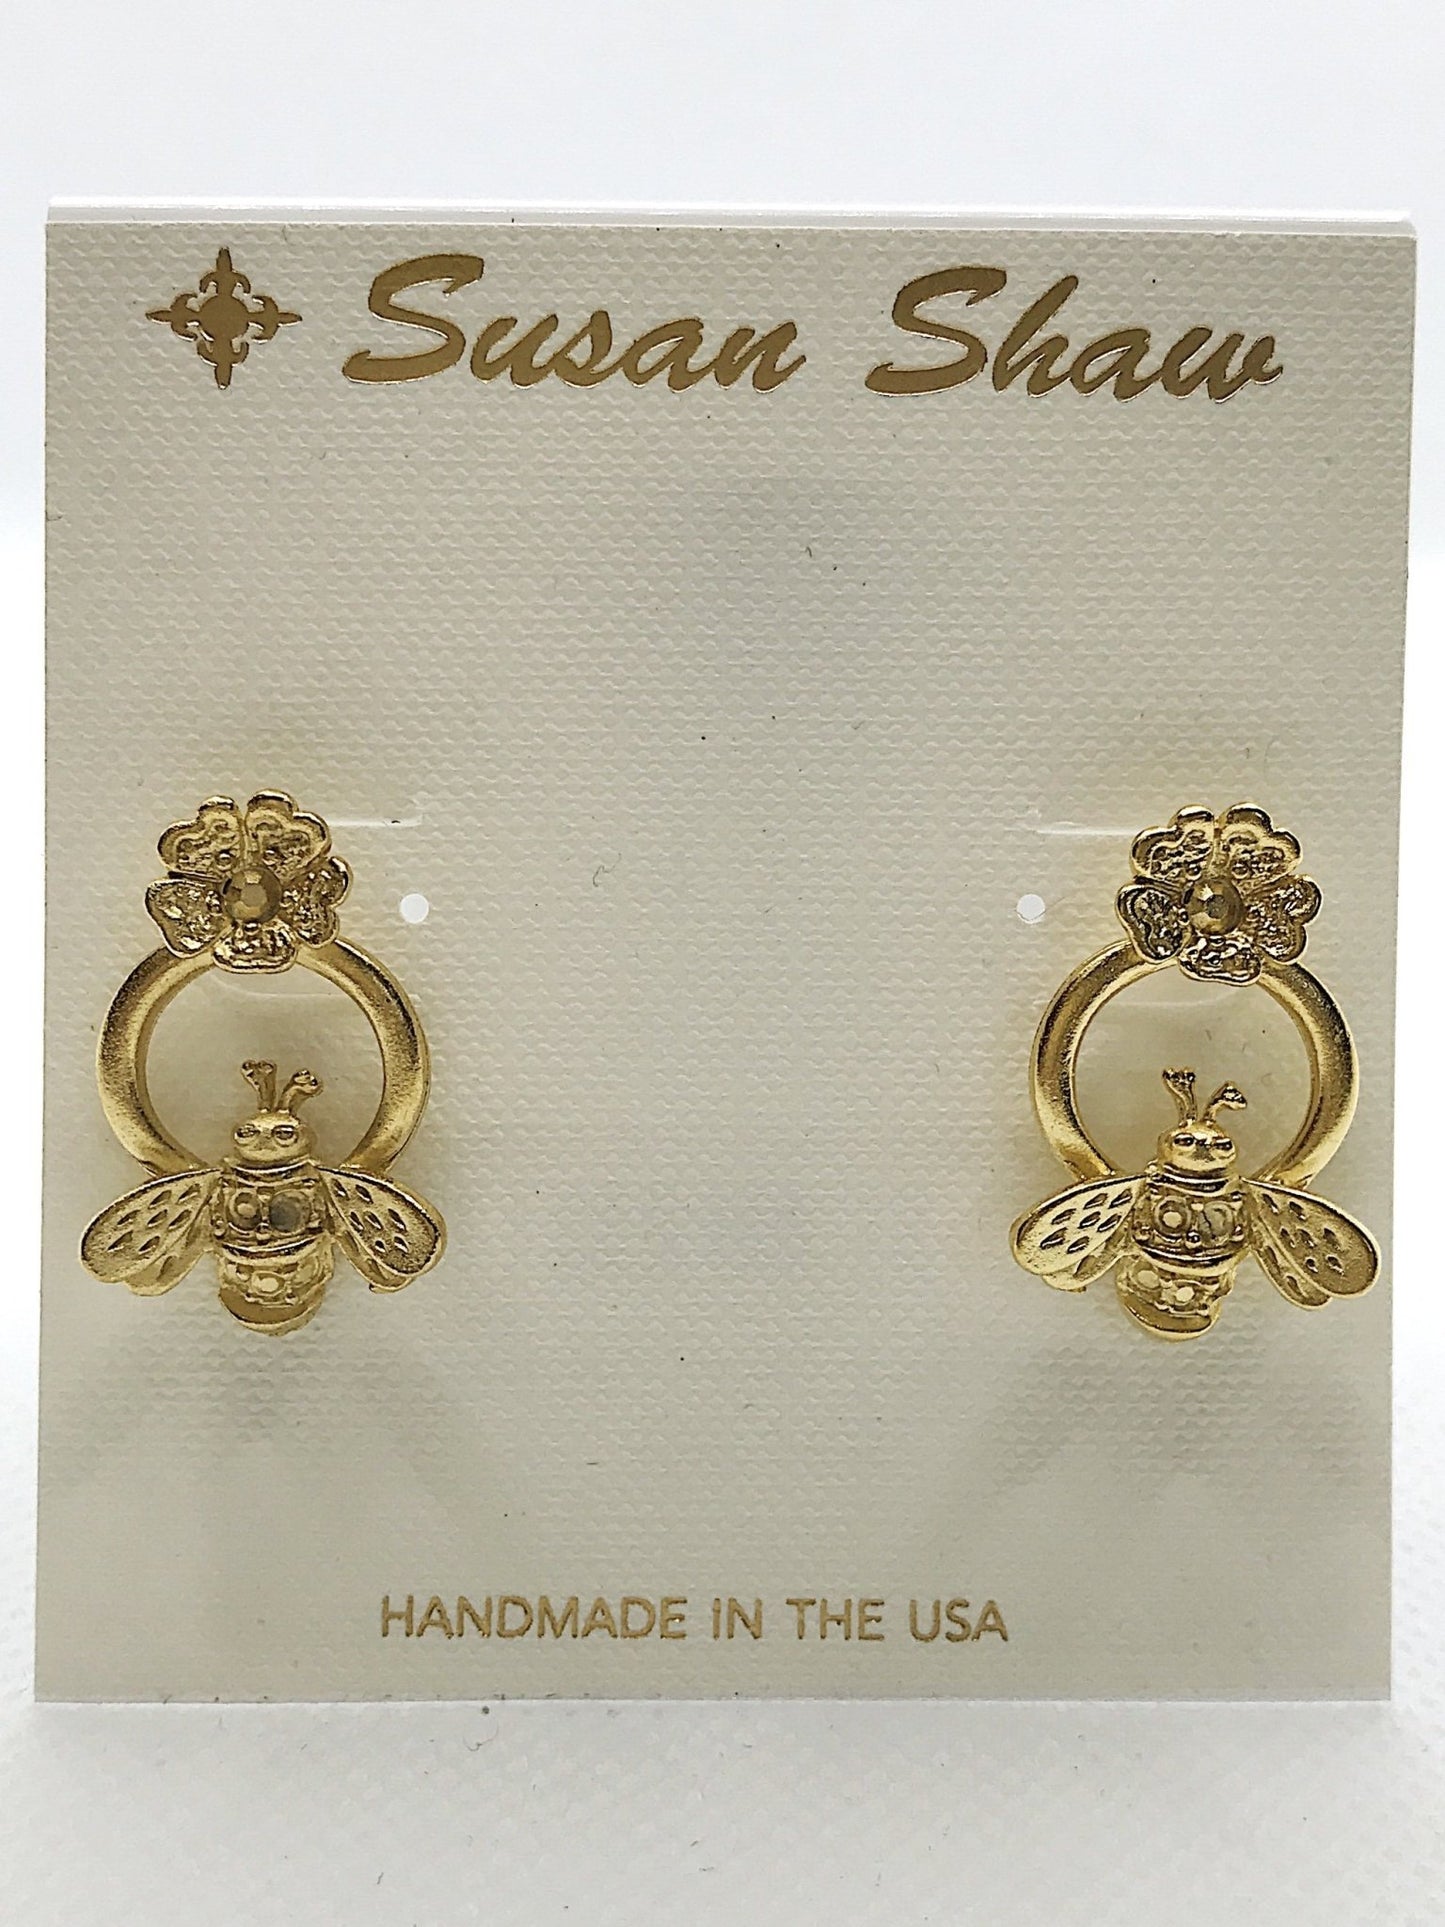 Gold Bee Stud Earrings - Royalties